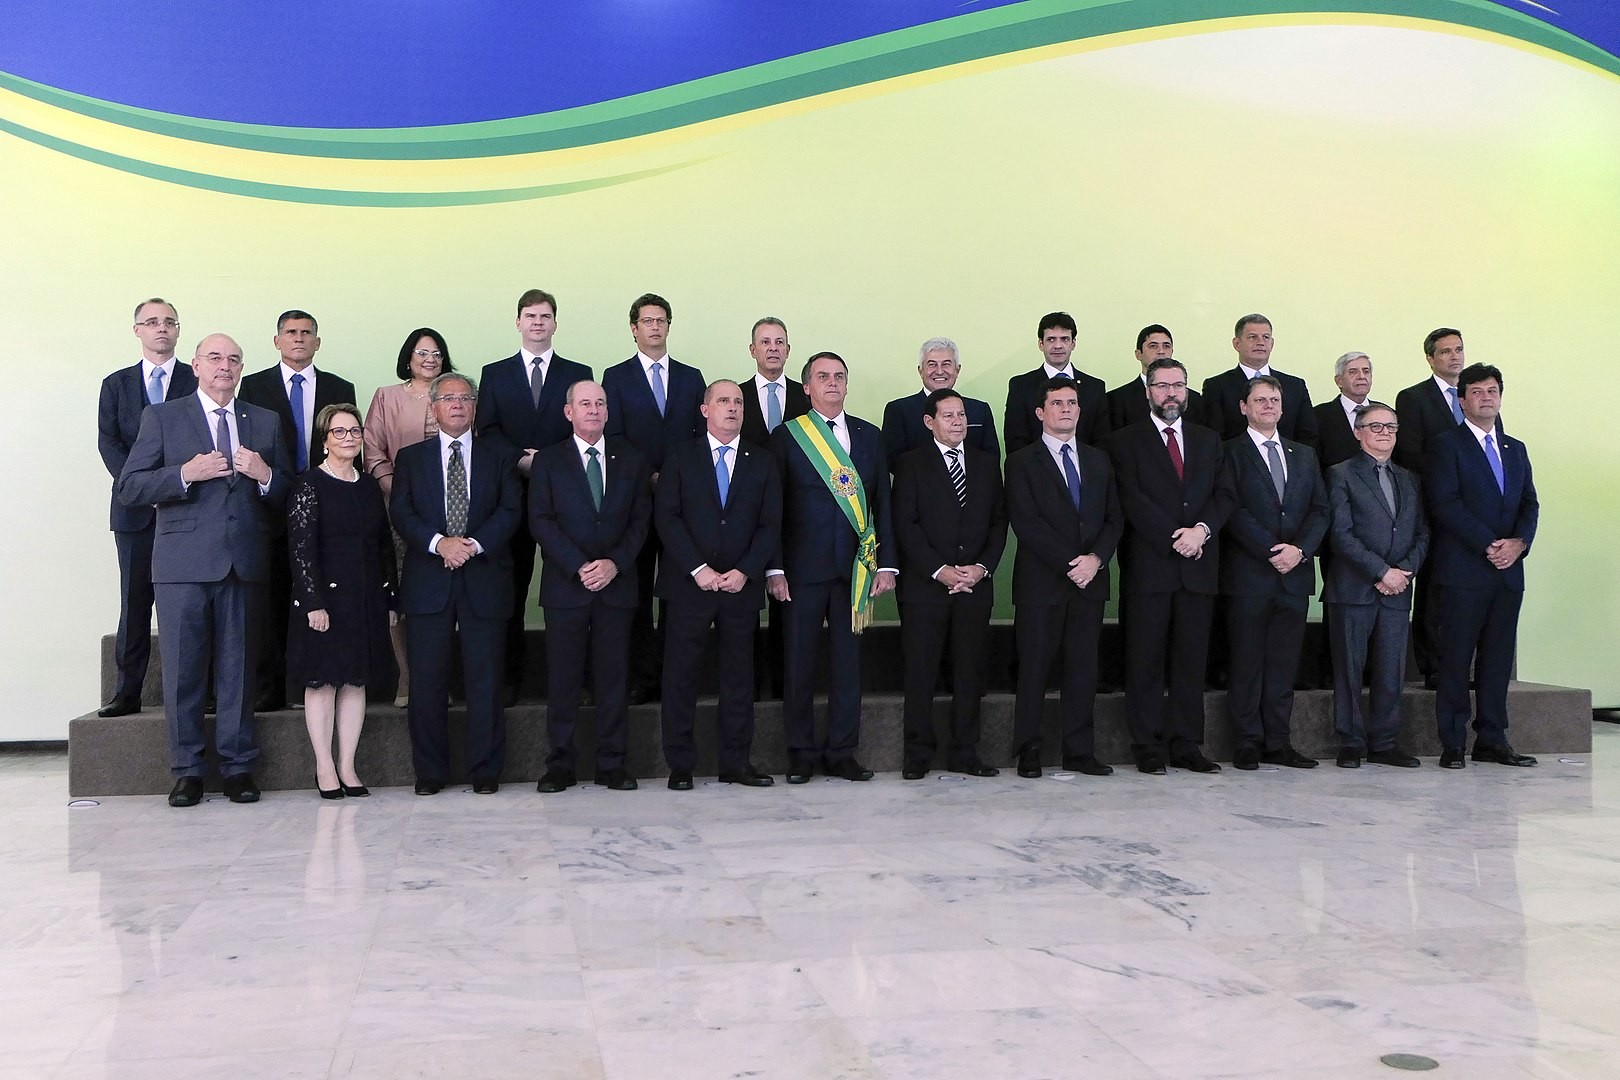 Governo Bolsonaro foi o que mais escolheu ministros empresários e militares, e o que menos selecionou ministros com doutorado e oriundos de São Paulo (Foto: Wikimedia Commons)